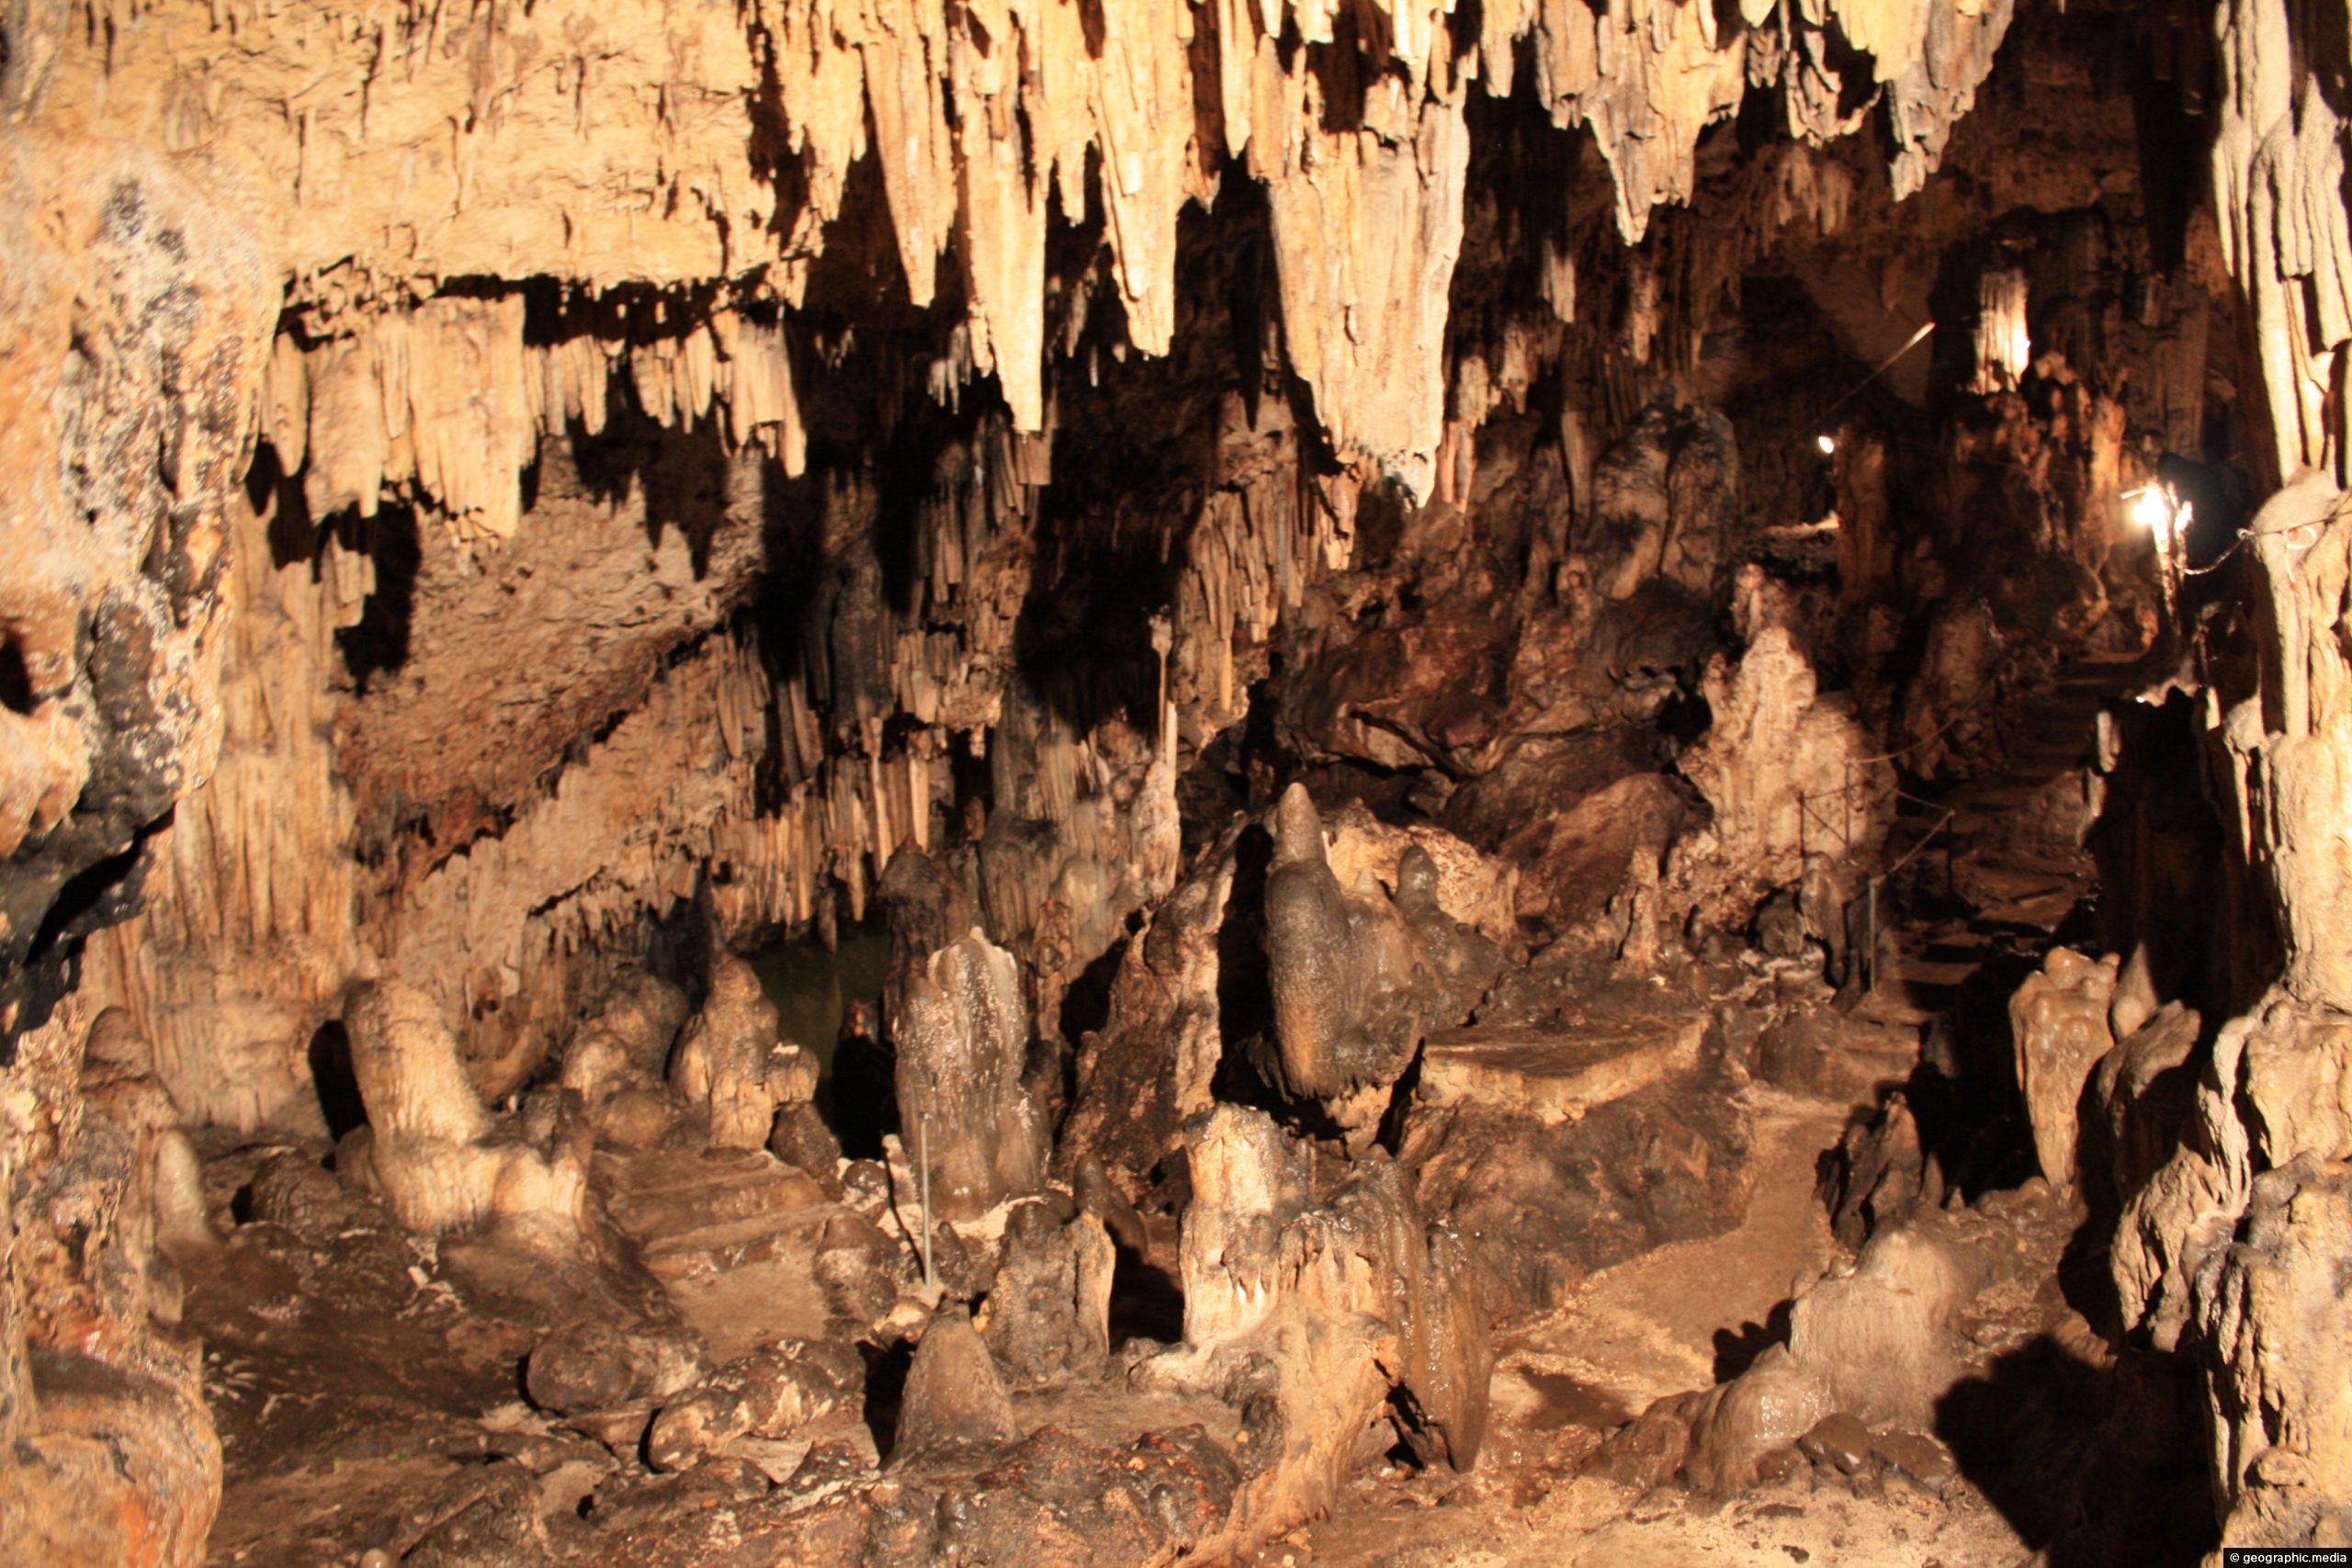 View of Anahulu Cave on Tongatapu Island